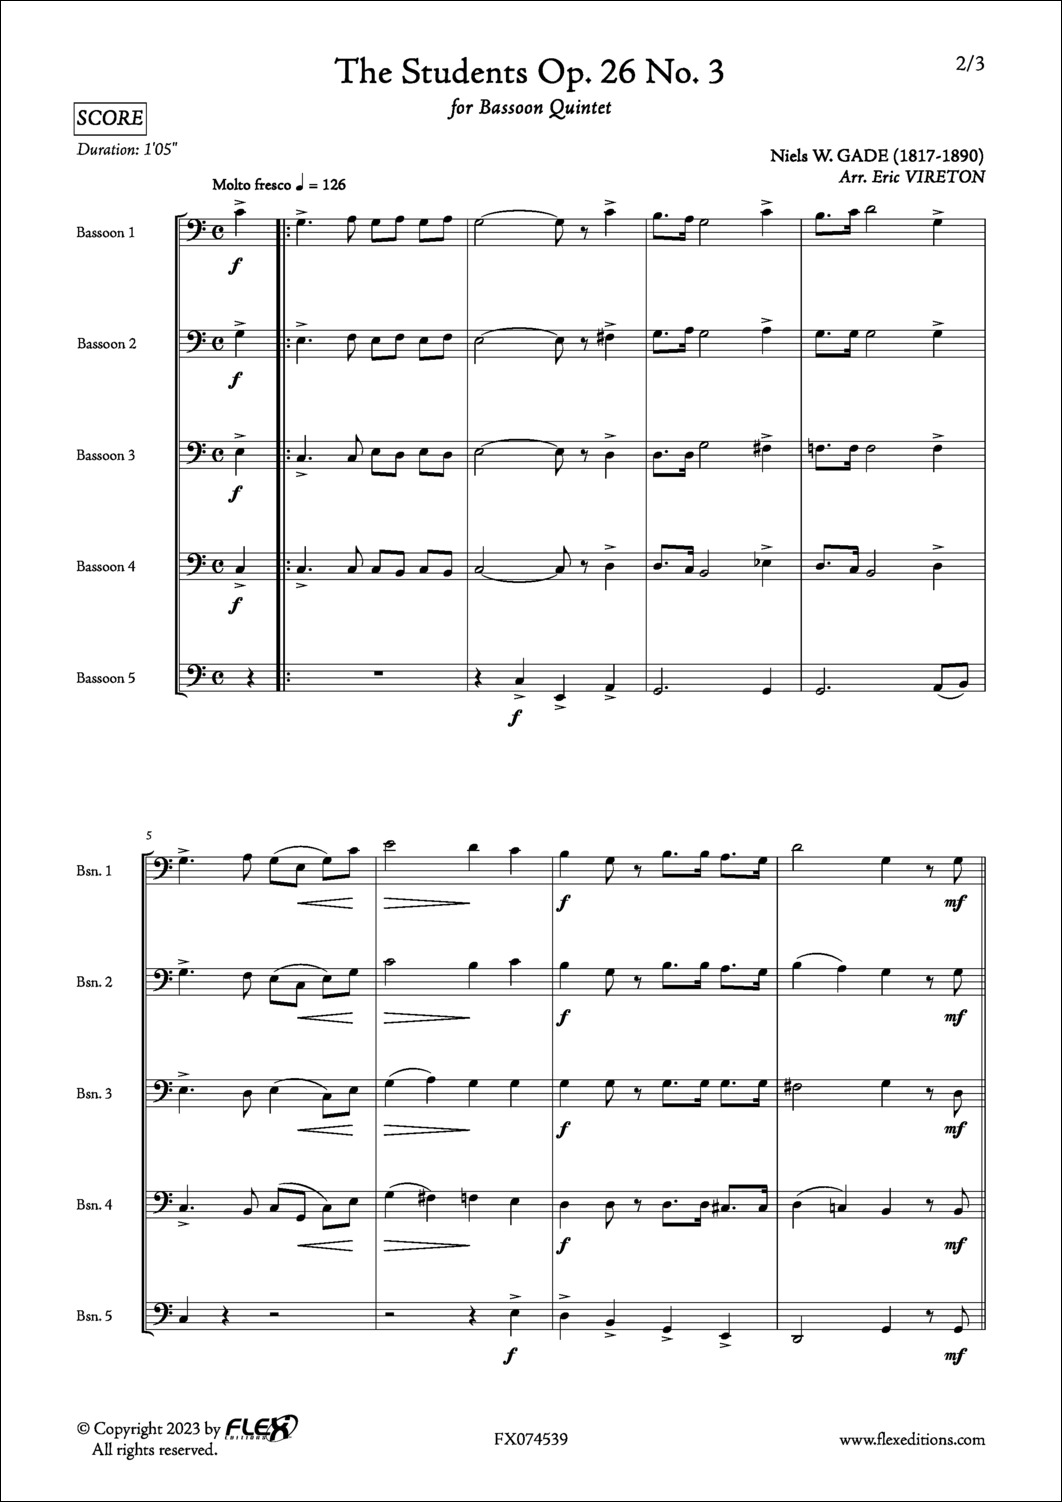 The Students Op. 26 No. 3 - N. GADE - <font color=#666666>Bassoon Quintet</font>